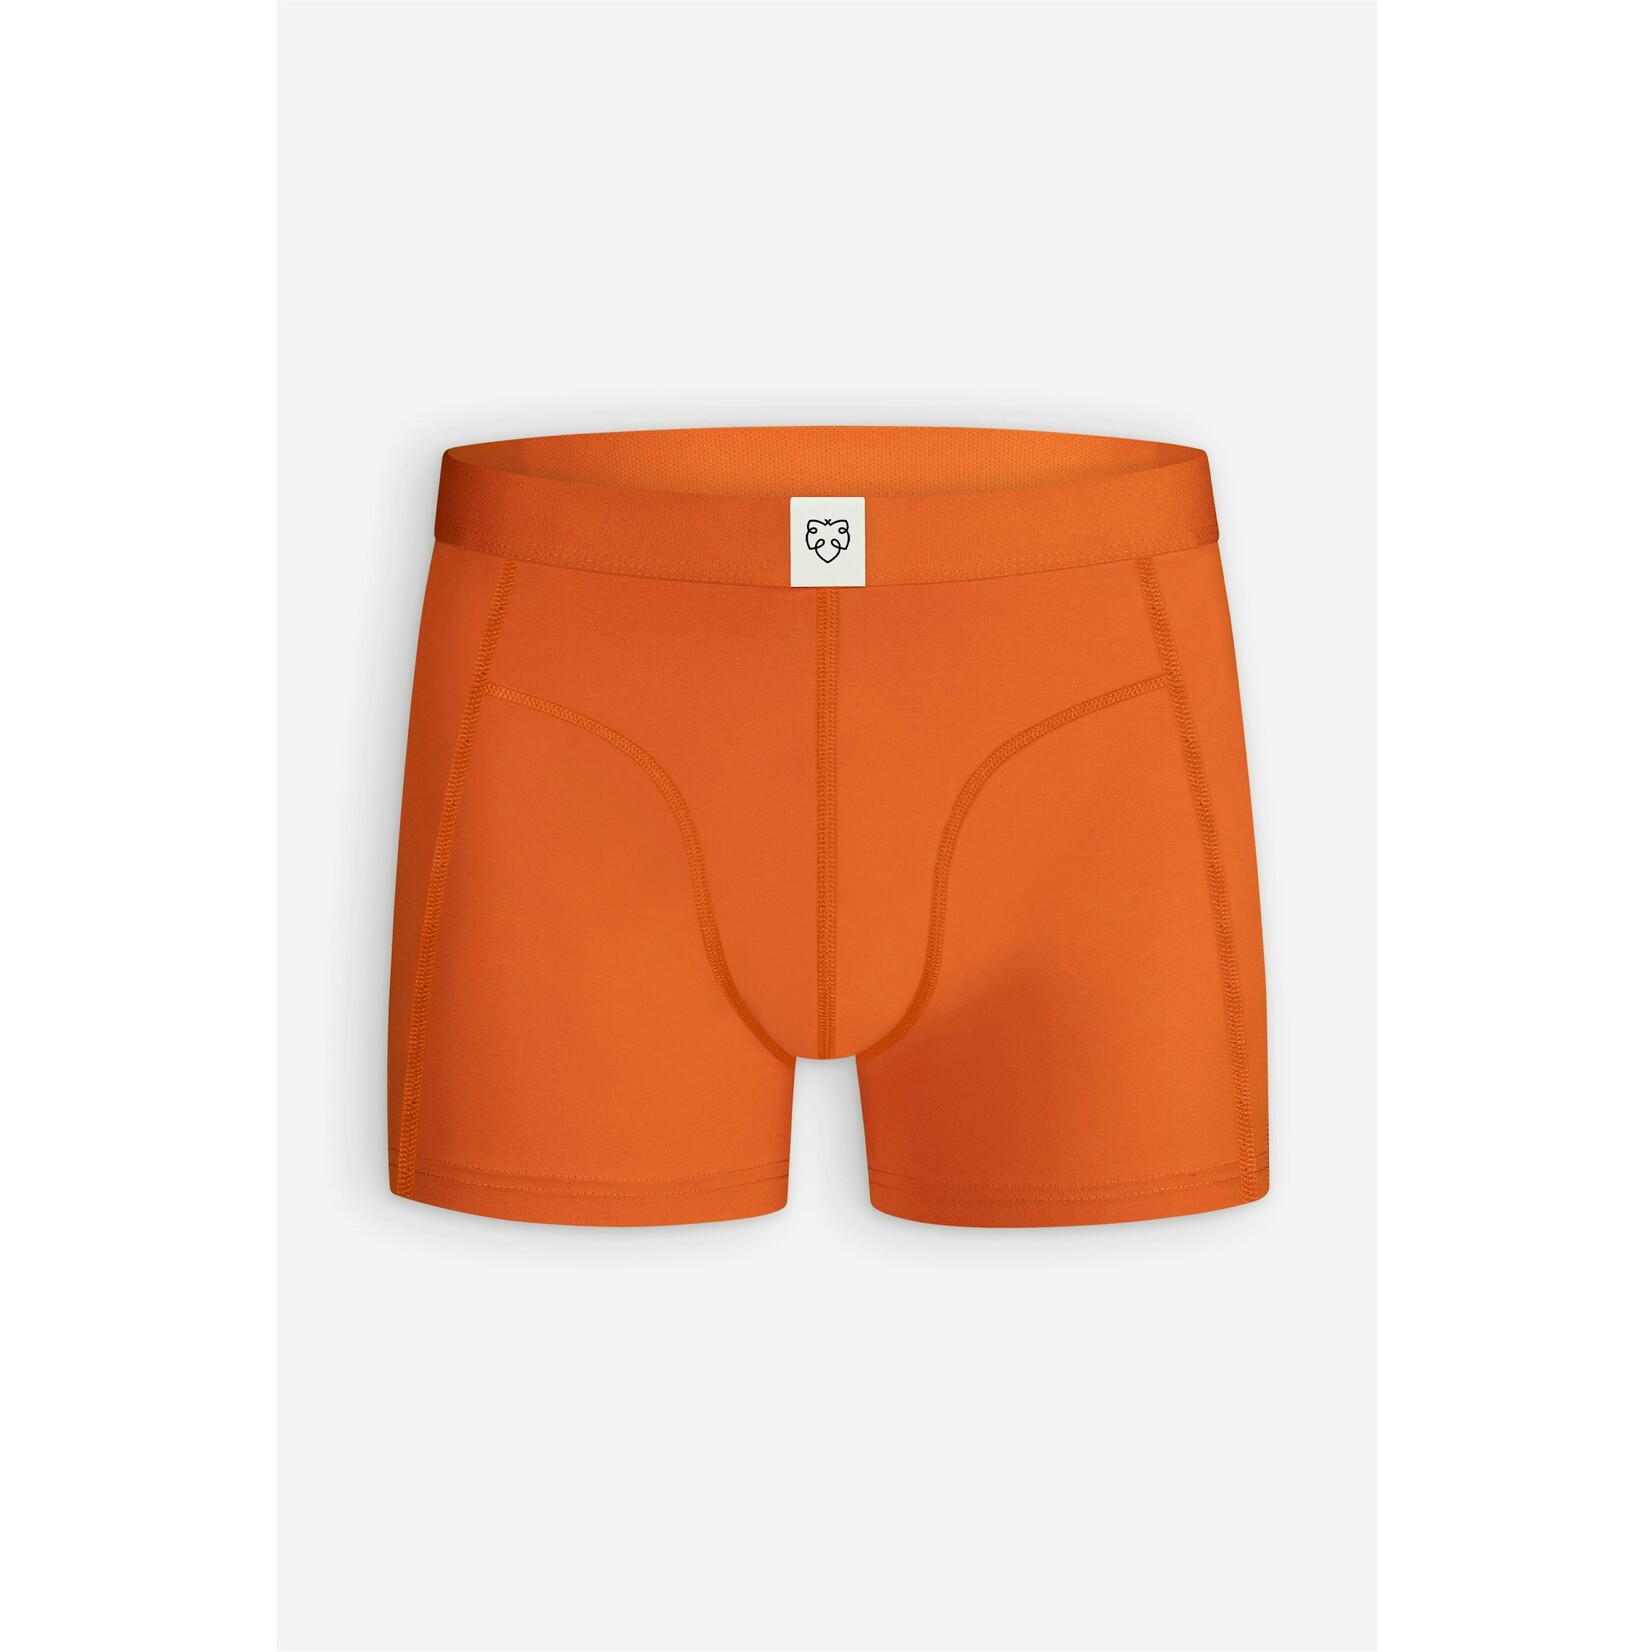 A-dam Underwear boxer Orange Solid